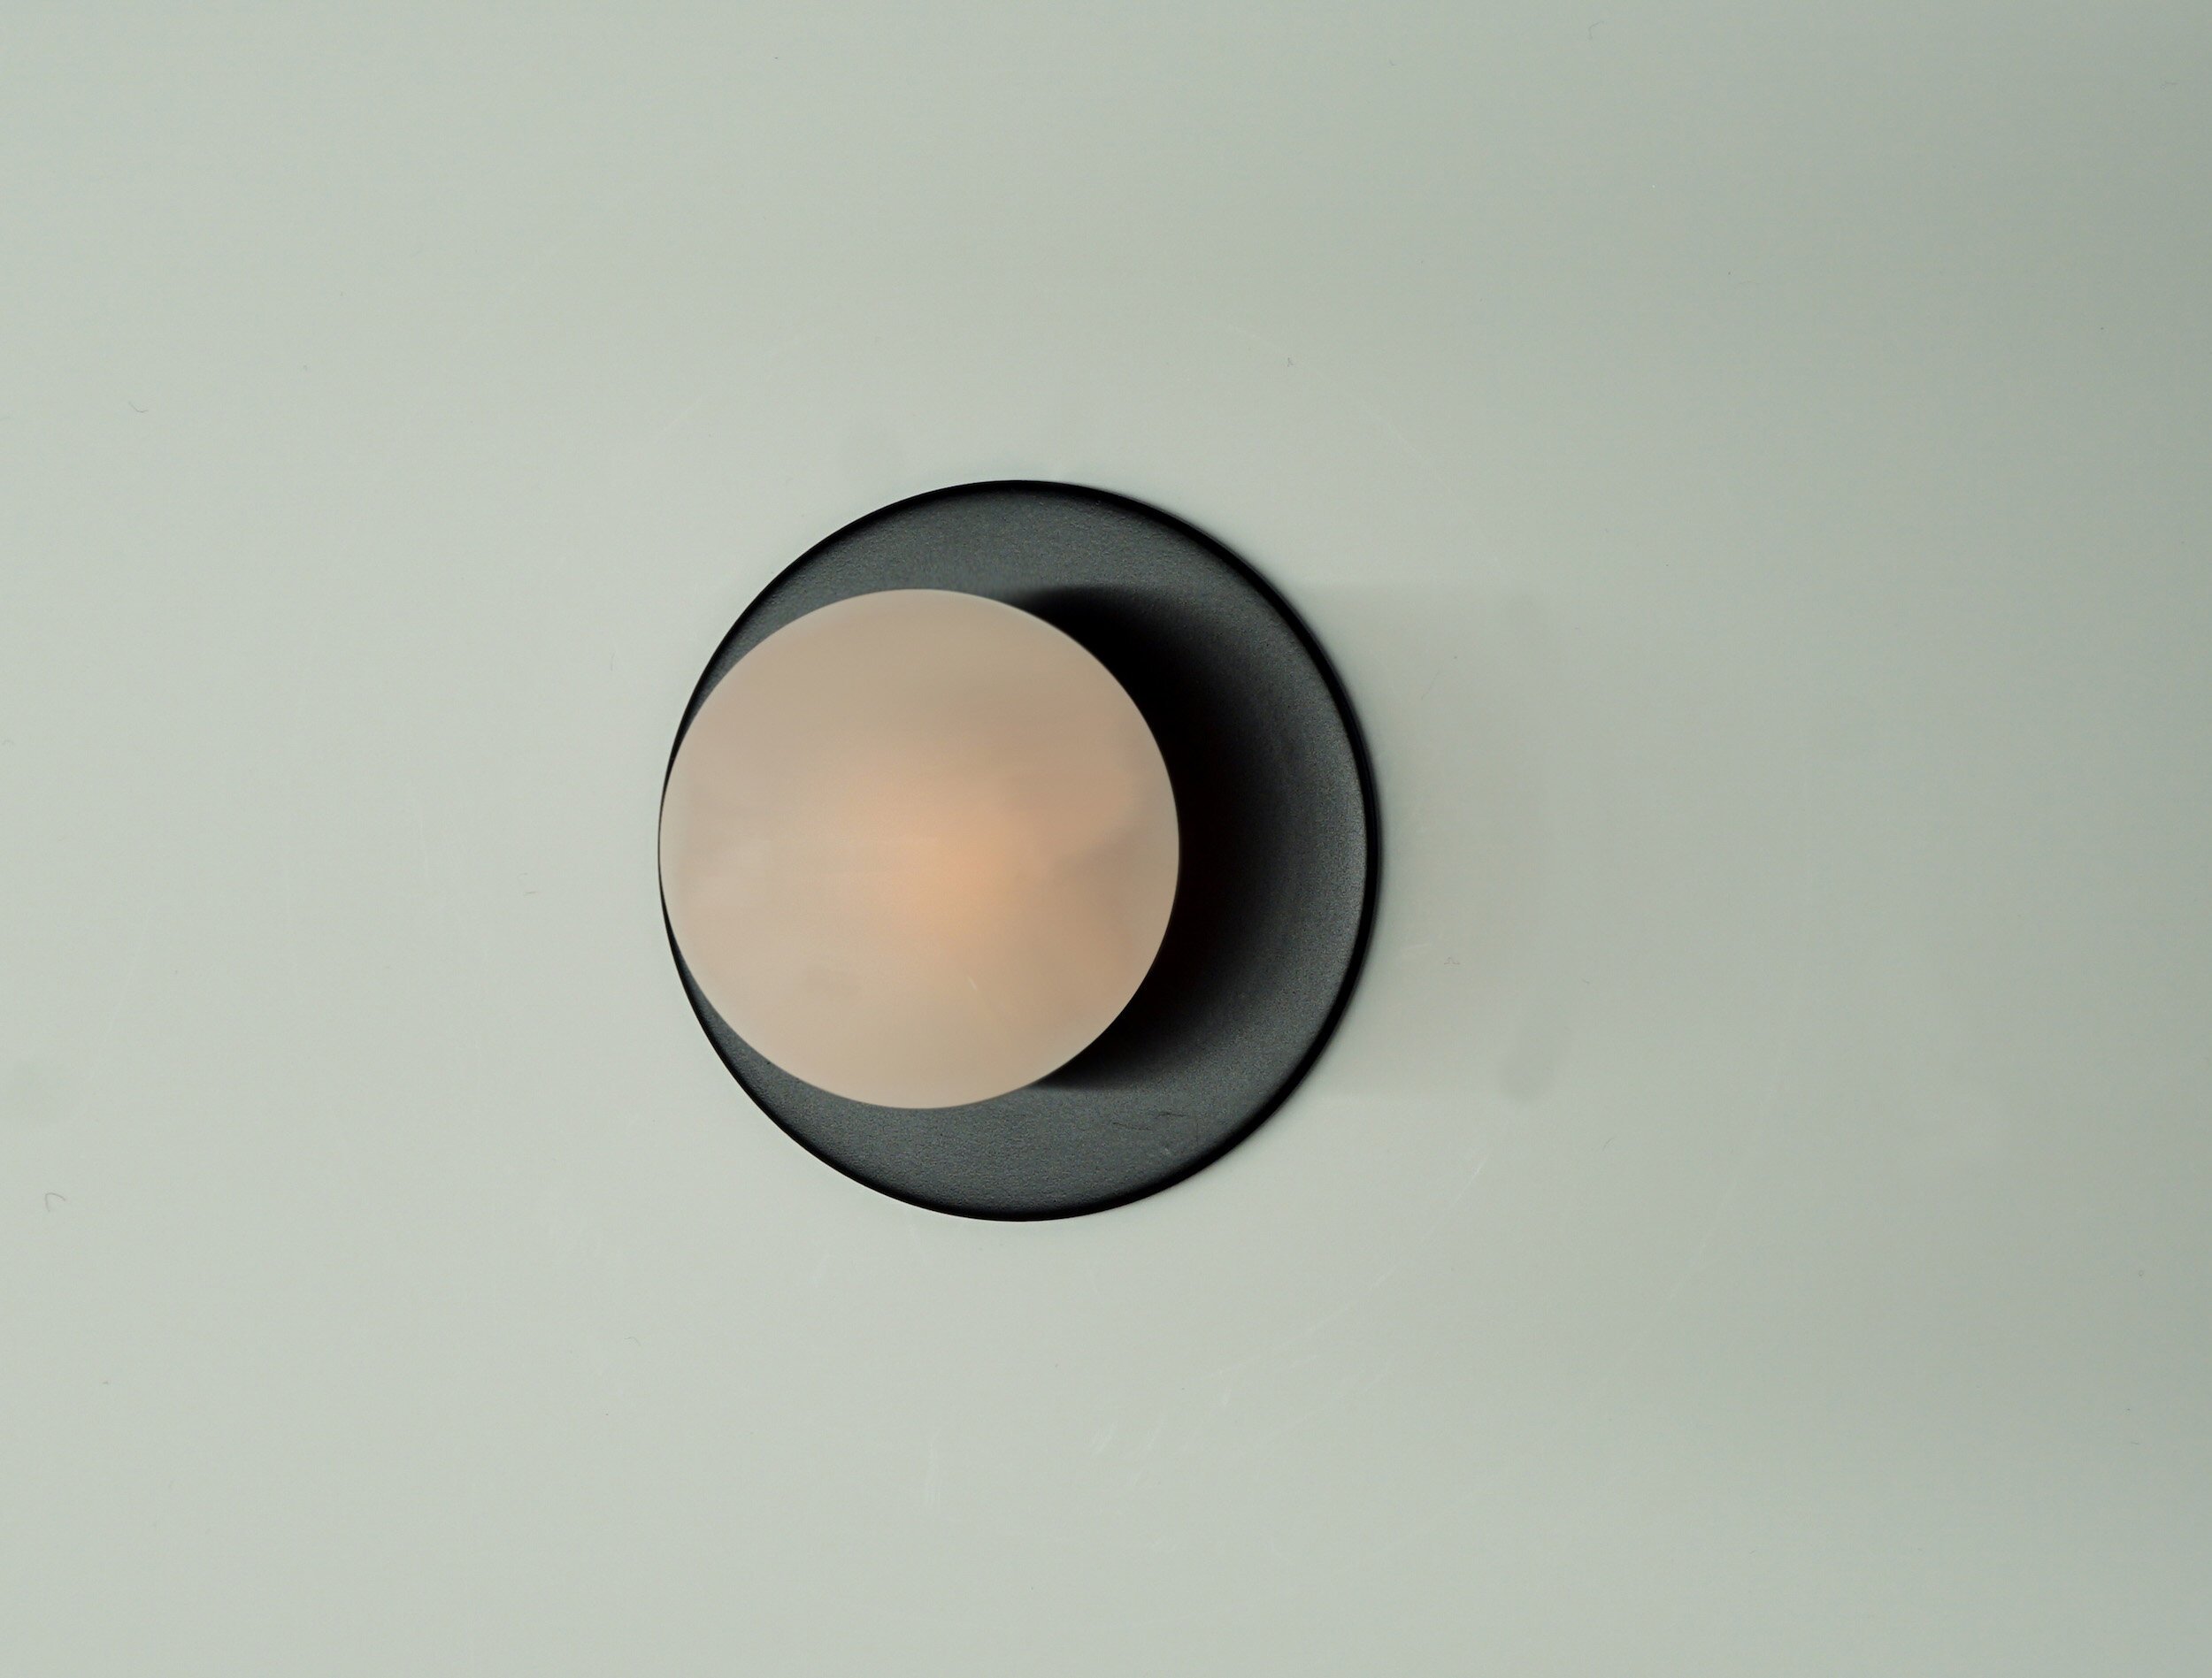  CASE-REAL（ケース・リアル）とKOICHI FUTATSUMATA STUDIOを主宰する二俣公一がデザインしたブラケットライト Untitledの発光部をすべて露出したタイプのサイズバリエーション。開発協力はBRANCH LIGHTING DESIGNの中村達基、製作はライティング創が手掛けた。 